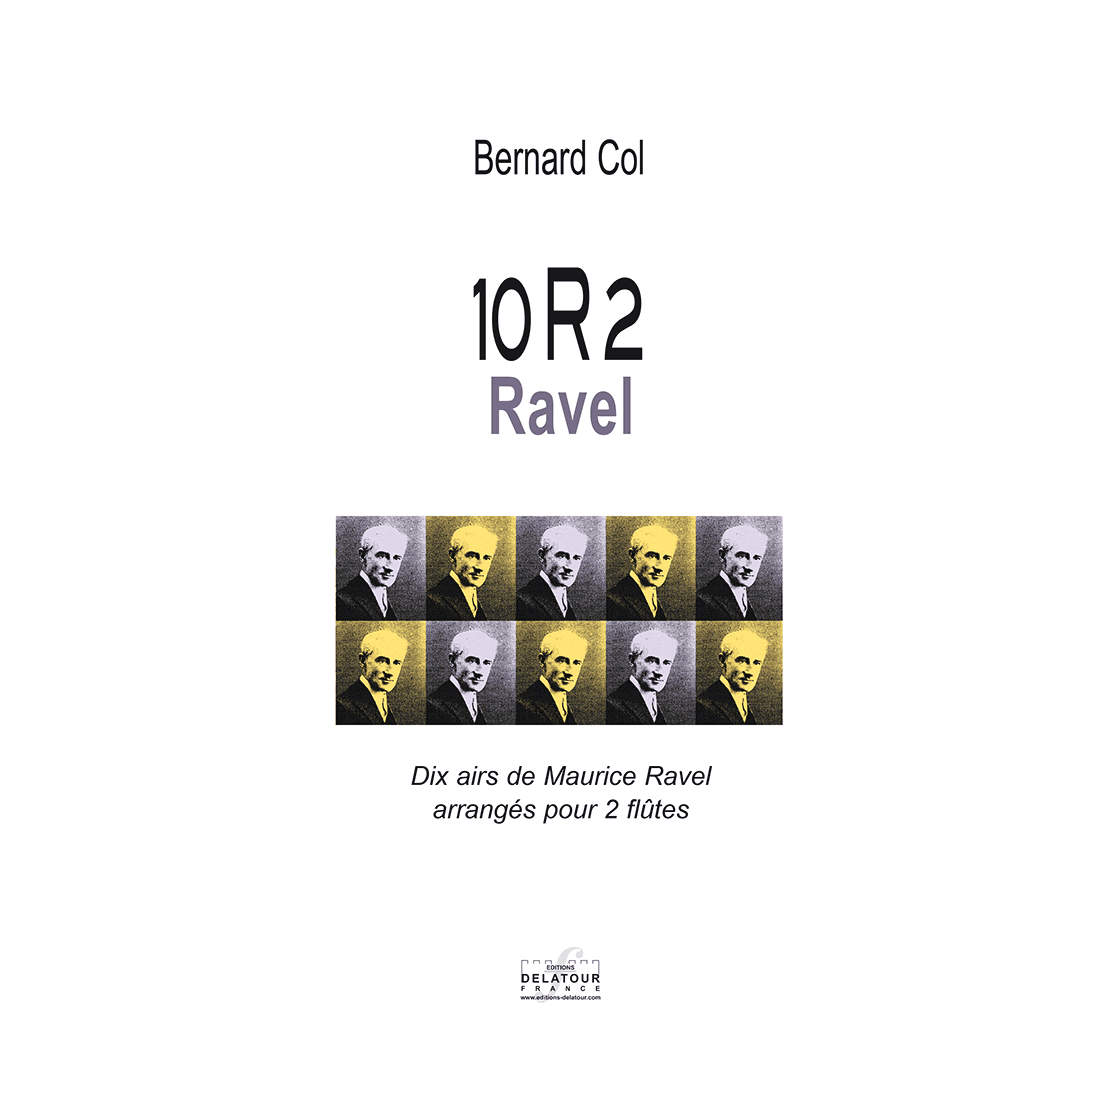 10R2 Ravel - Dix airs de Ravel arrangés for 2 flutes